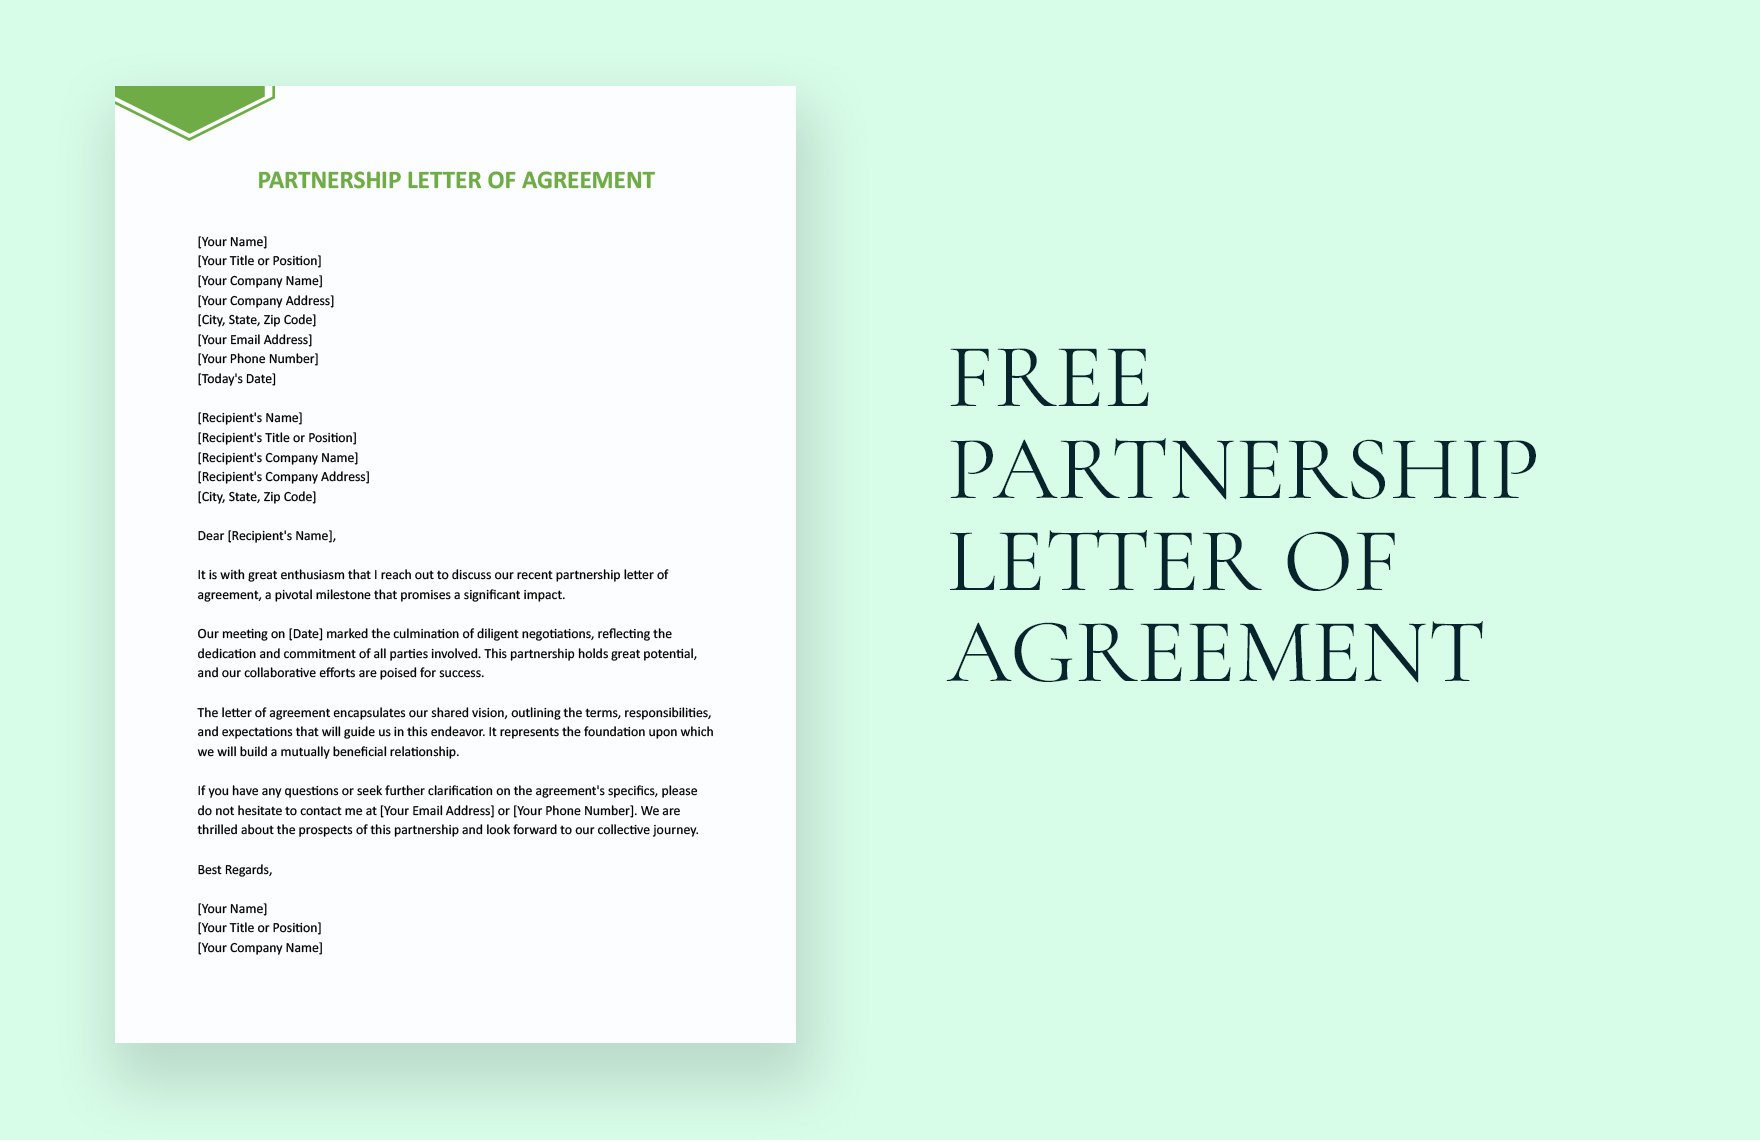 Partnership Letter Of Agreement